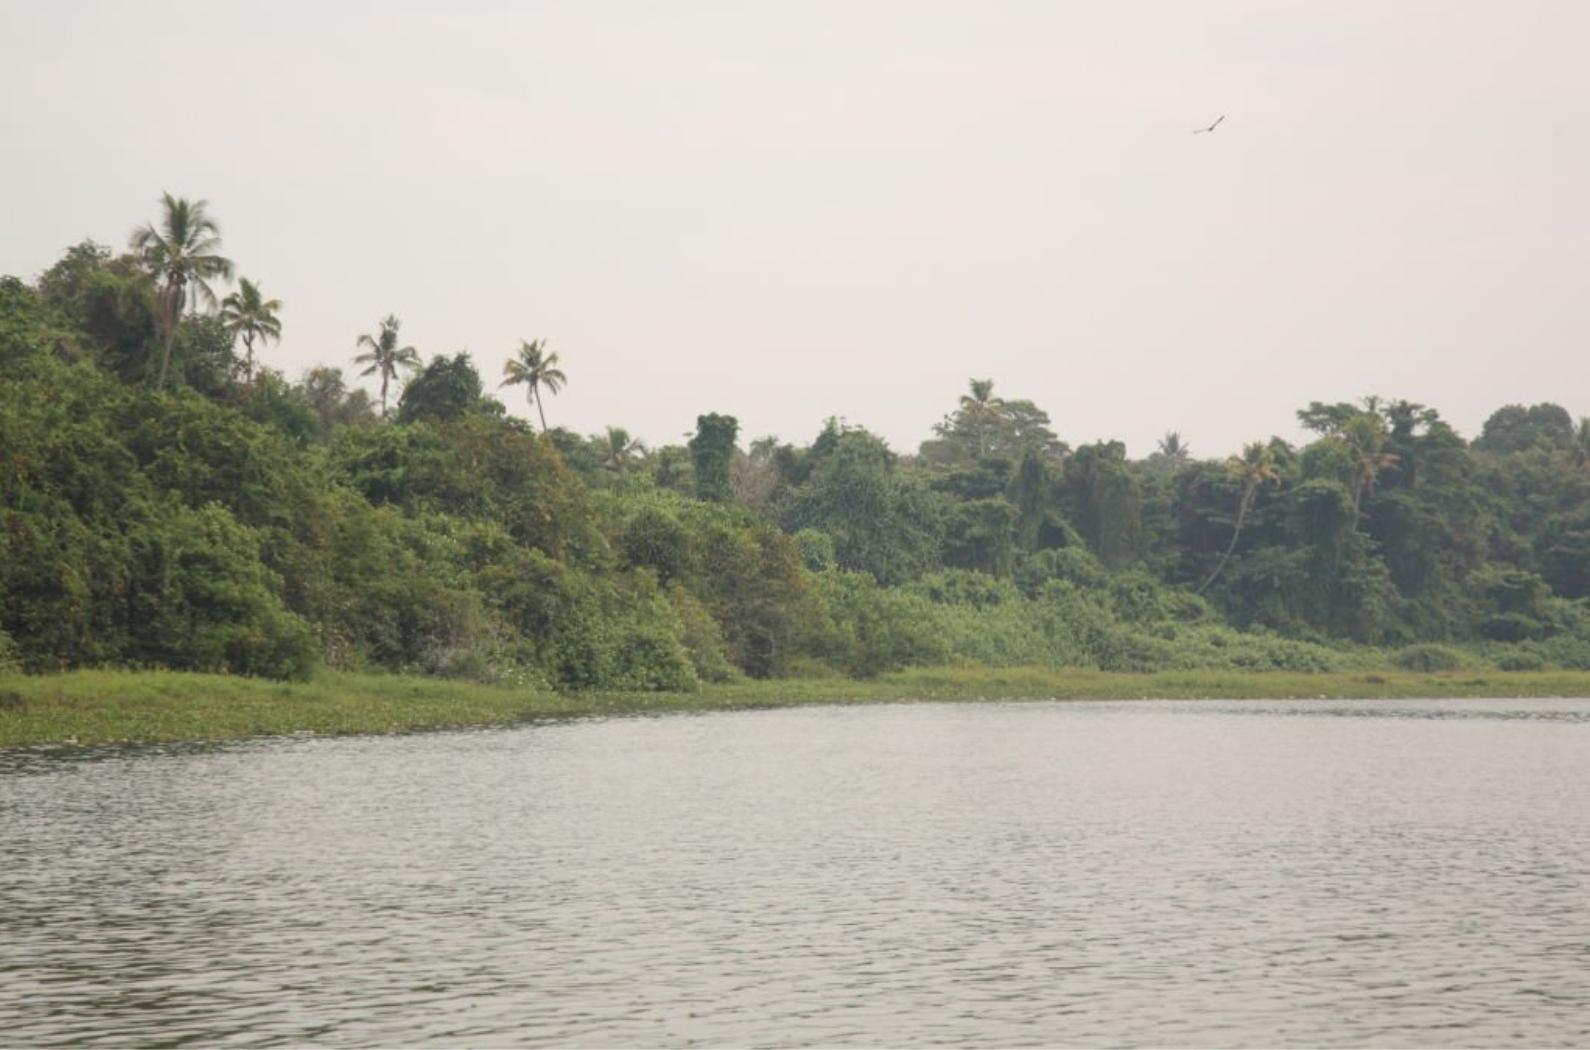 Kumarakom bird Sanctuary and backwaters, Kerala.